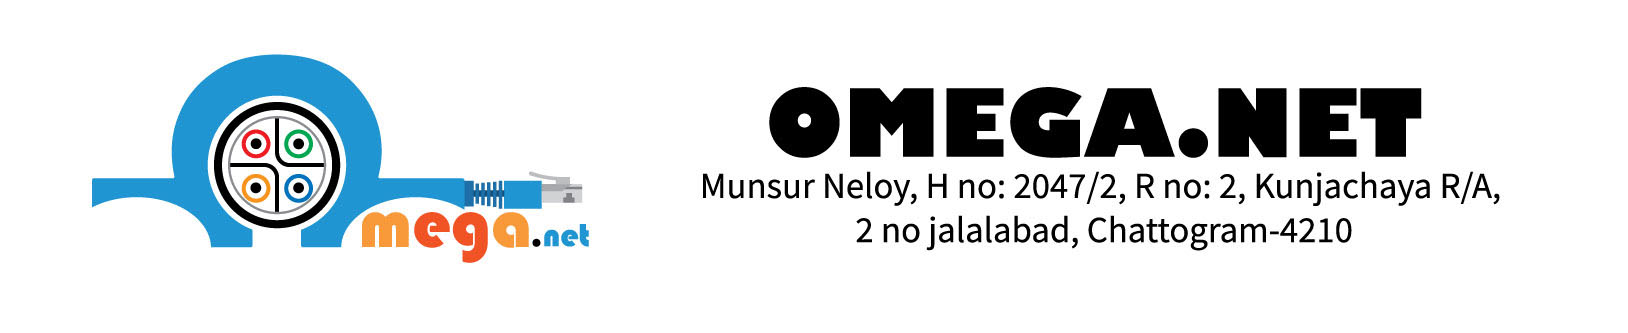 Omega Network-logo